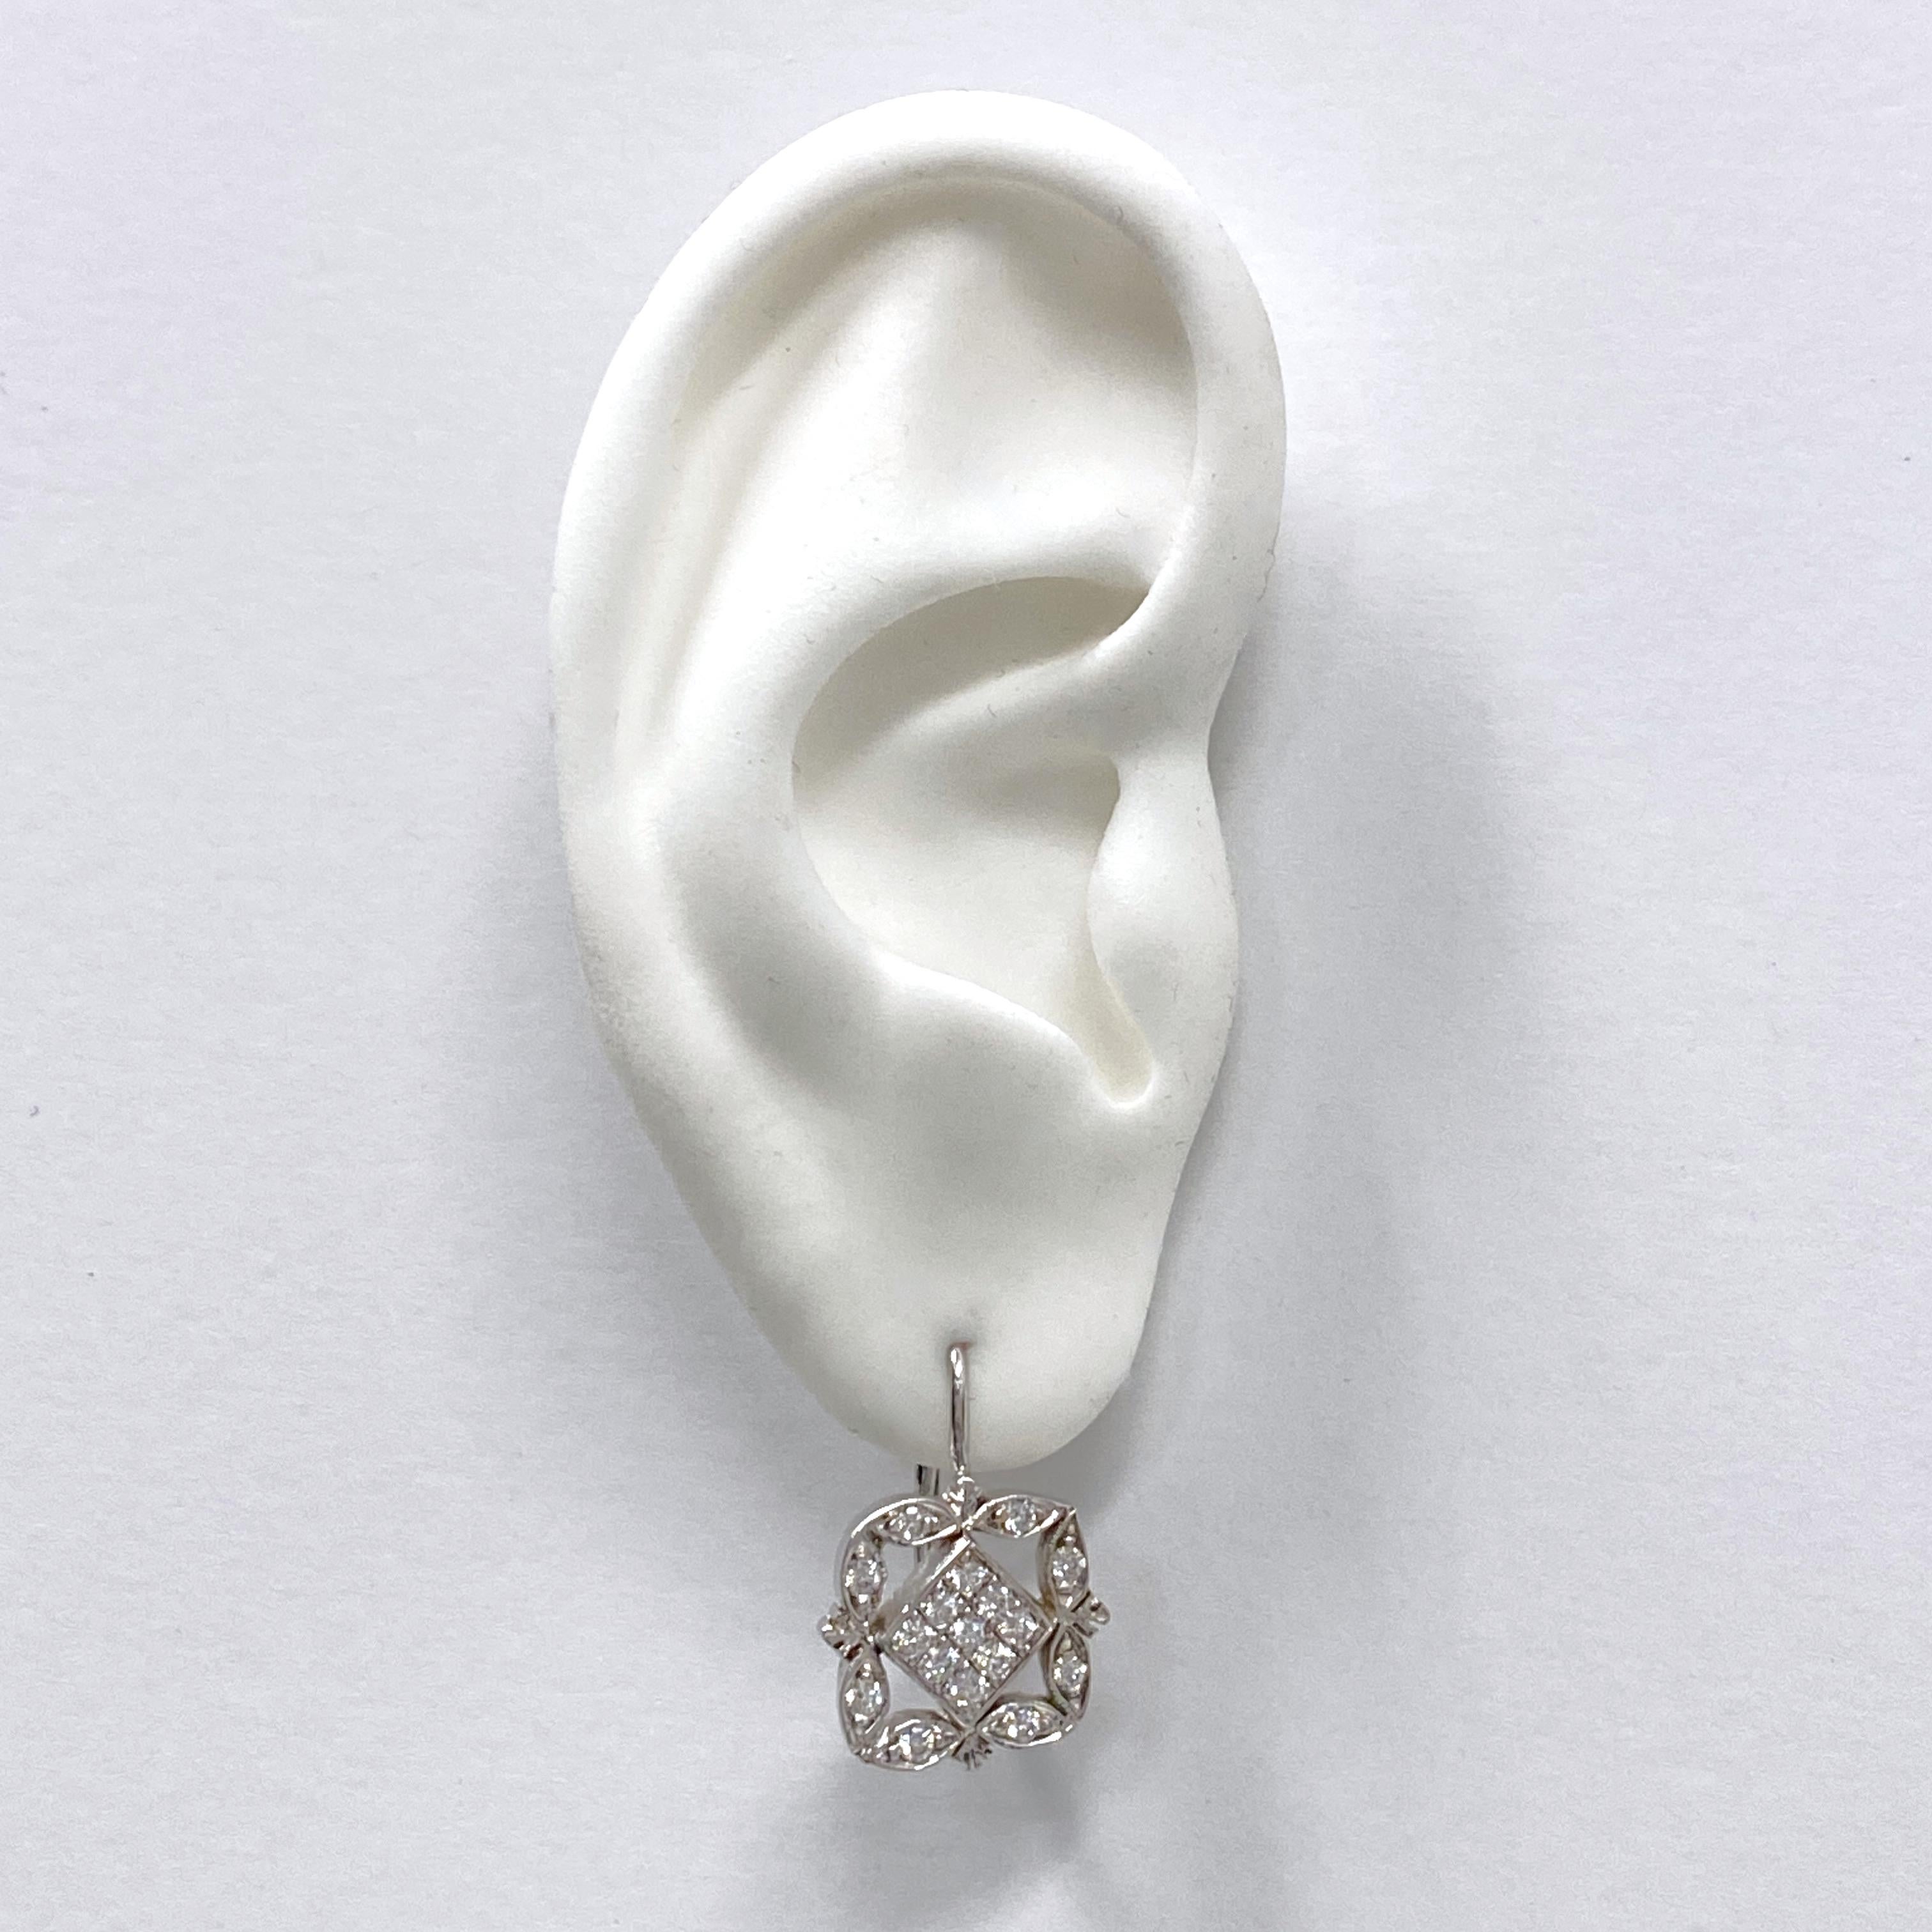 Diese eleganten Ohrringe von Eytan Brandes sehen aus wie edwardianische Ohrringe, sind aber mit strahlend weißen, modern geschliffenen Diamanten besetzt, die viel stärker funkeln als alles, was aus dieser Zeit stammt (als die Edelsteinschleiftechnik